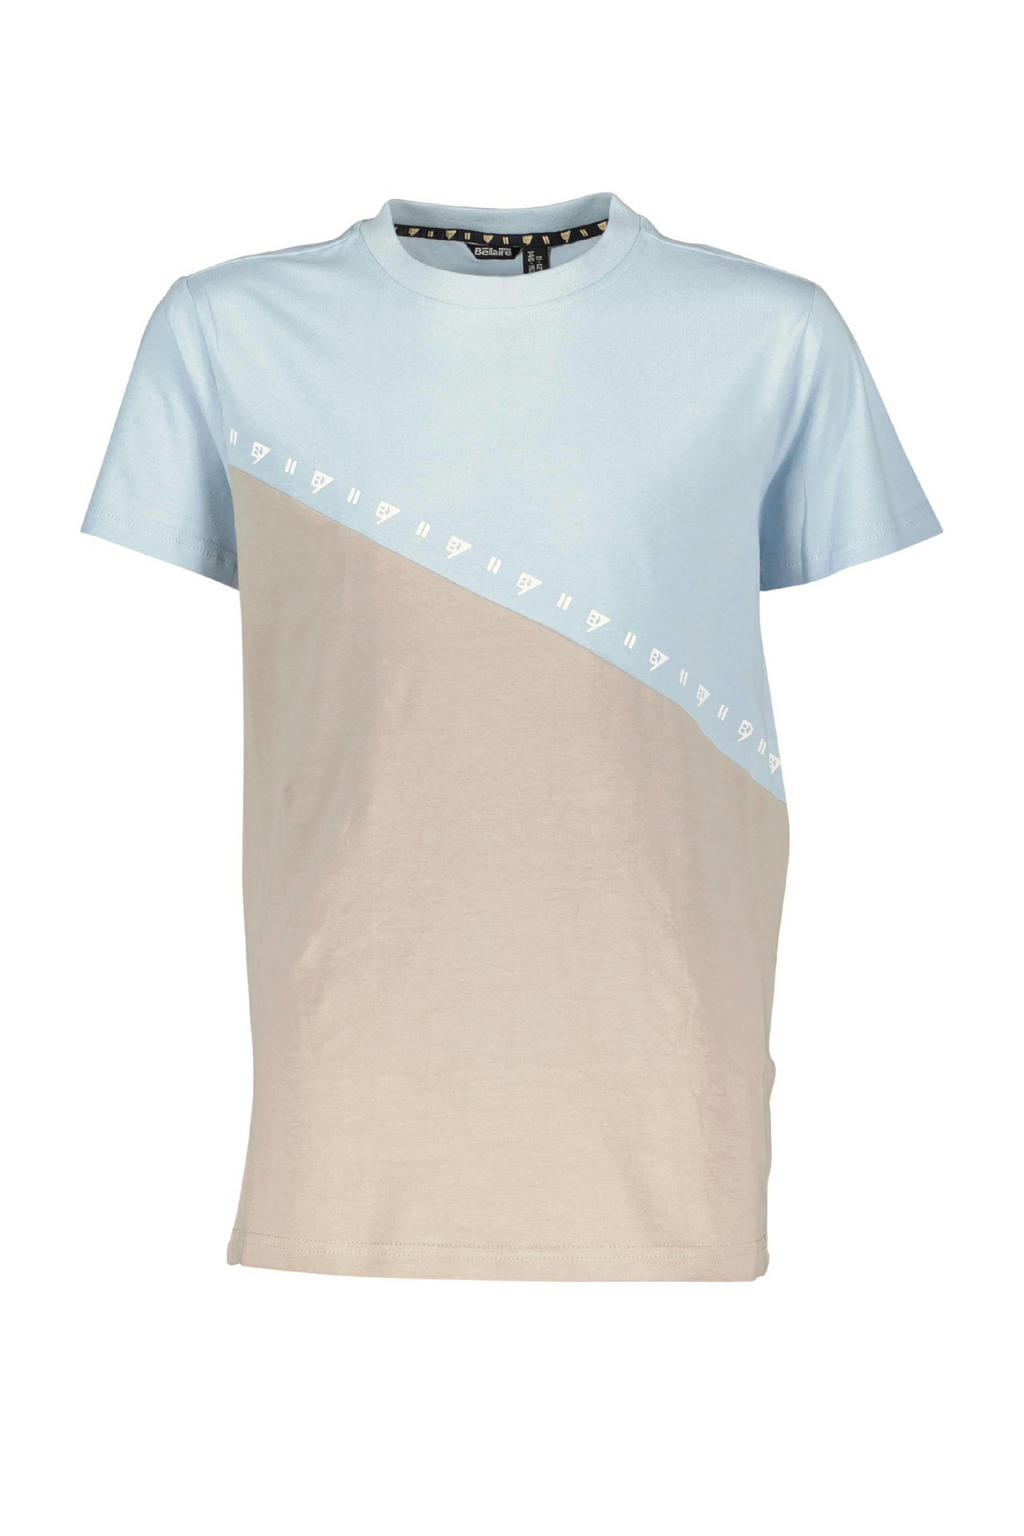 Bellaire T-shirt lichtblauw/beige